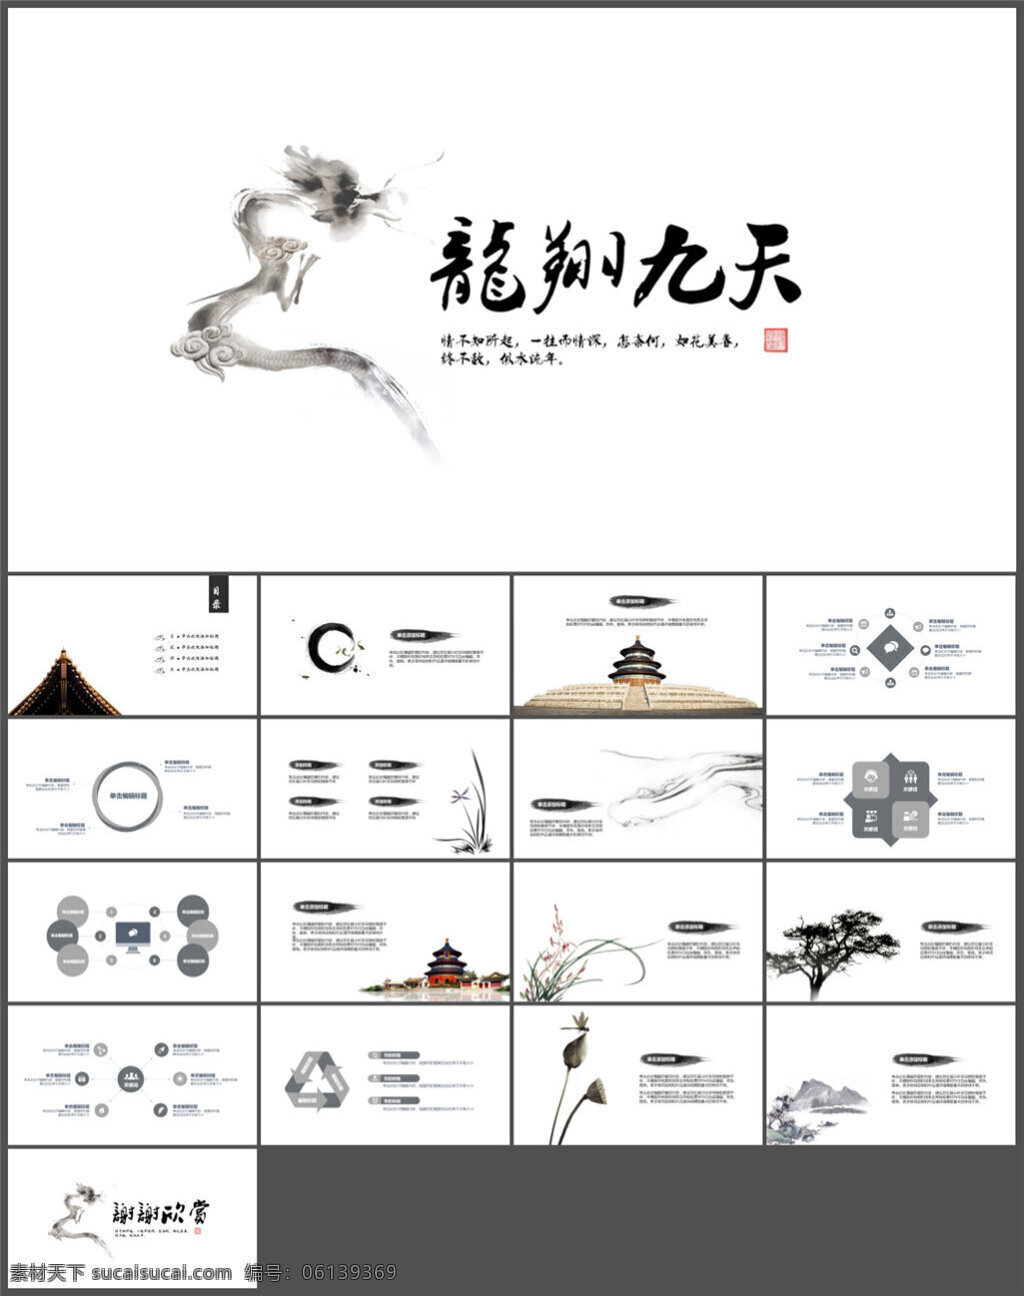 龙翔 九天 简洁 中国 风 模板 图表 制作 多媒体 企业 动态 模版素材下载 ppt素材 pptx 白色